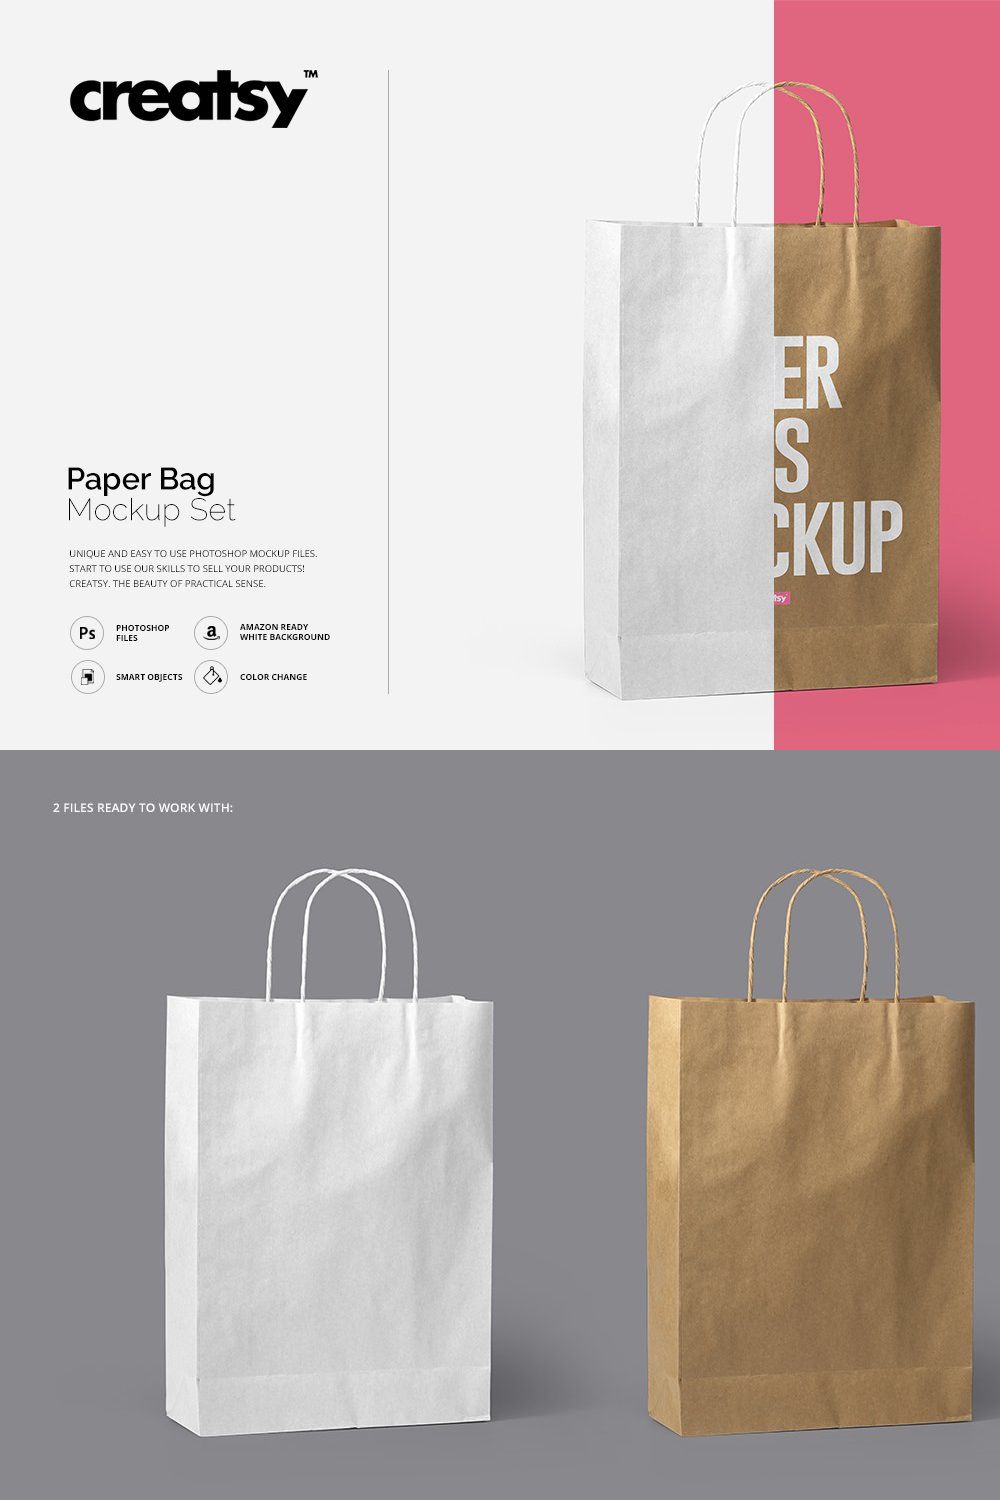 Paper Bag Mockup Set pinterest preview image.